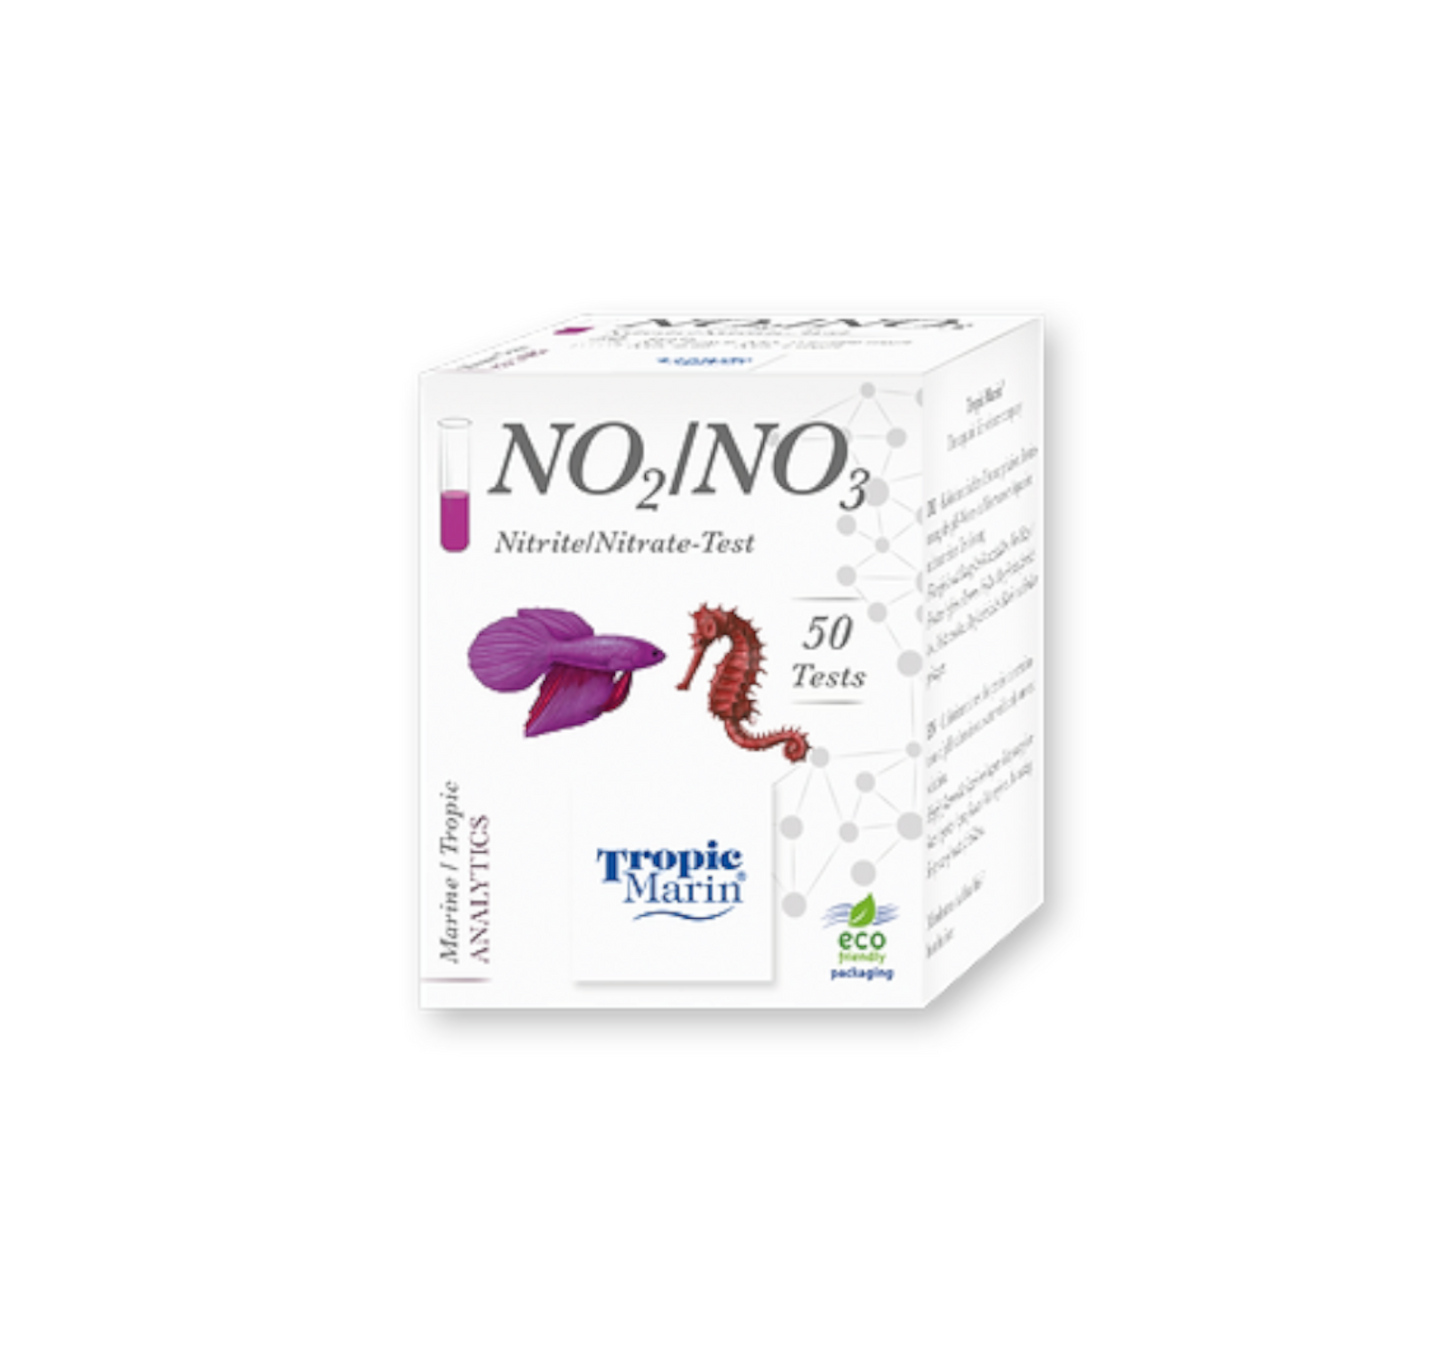 NO2/NO3 test nitriti